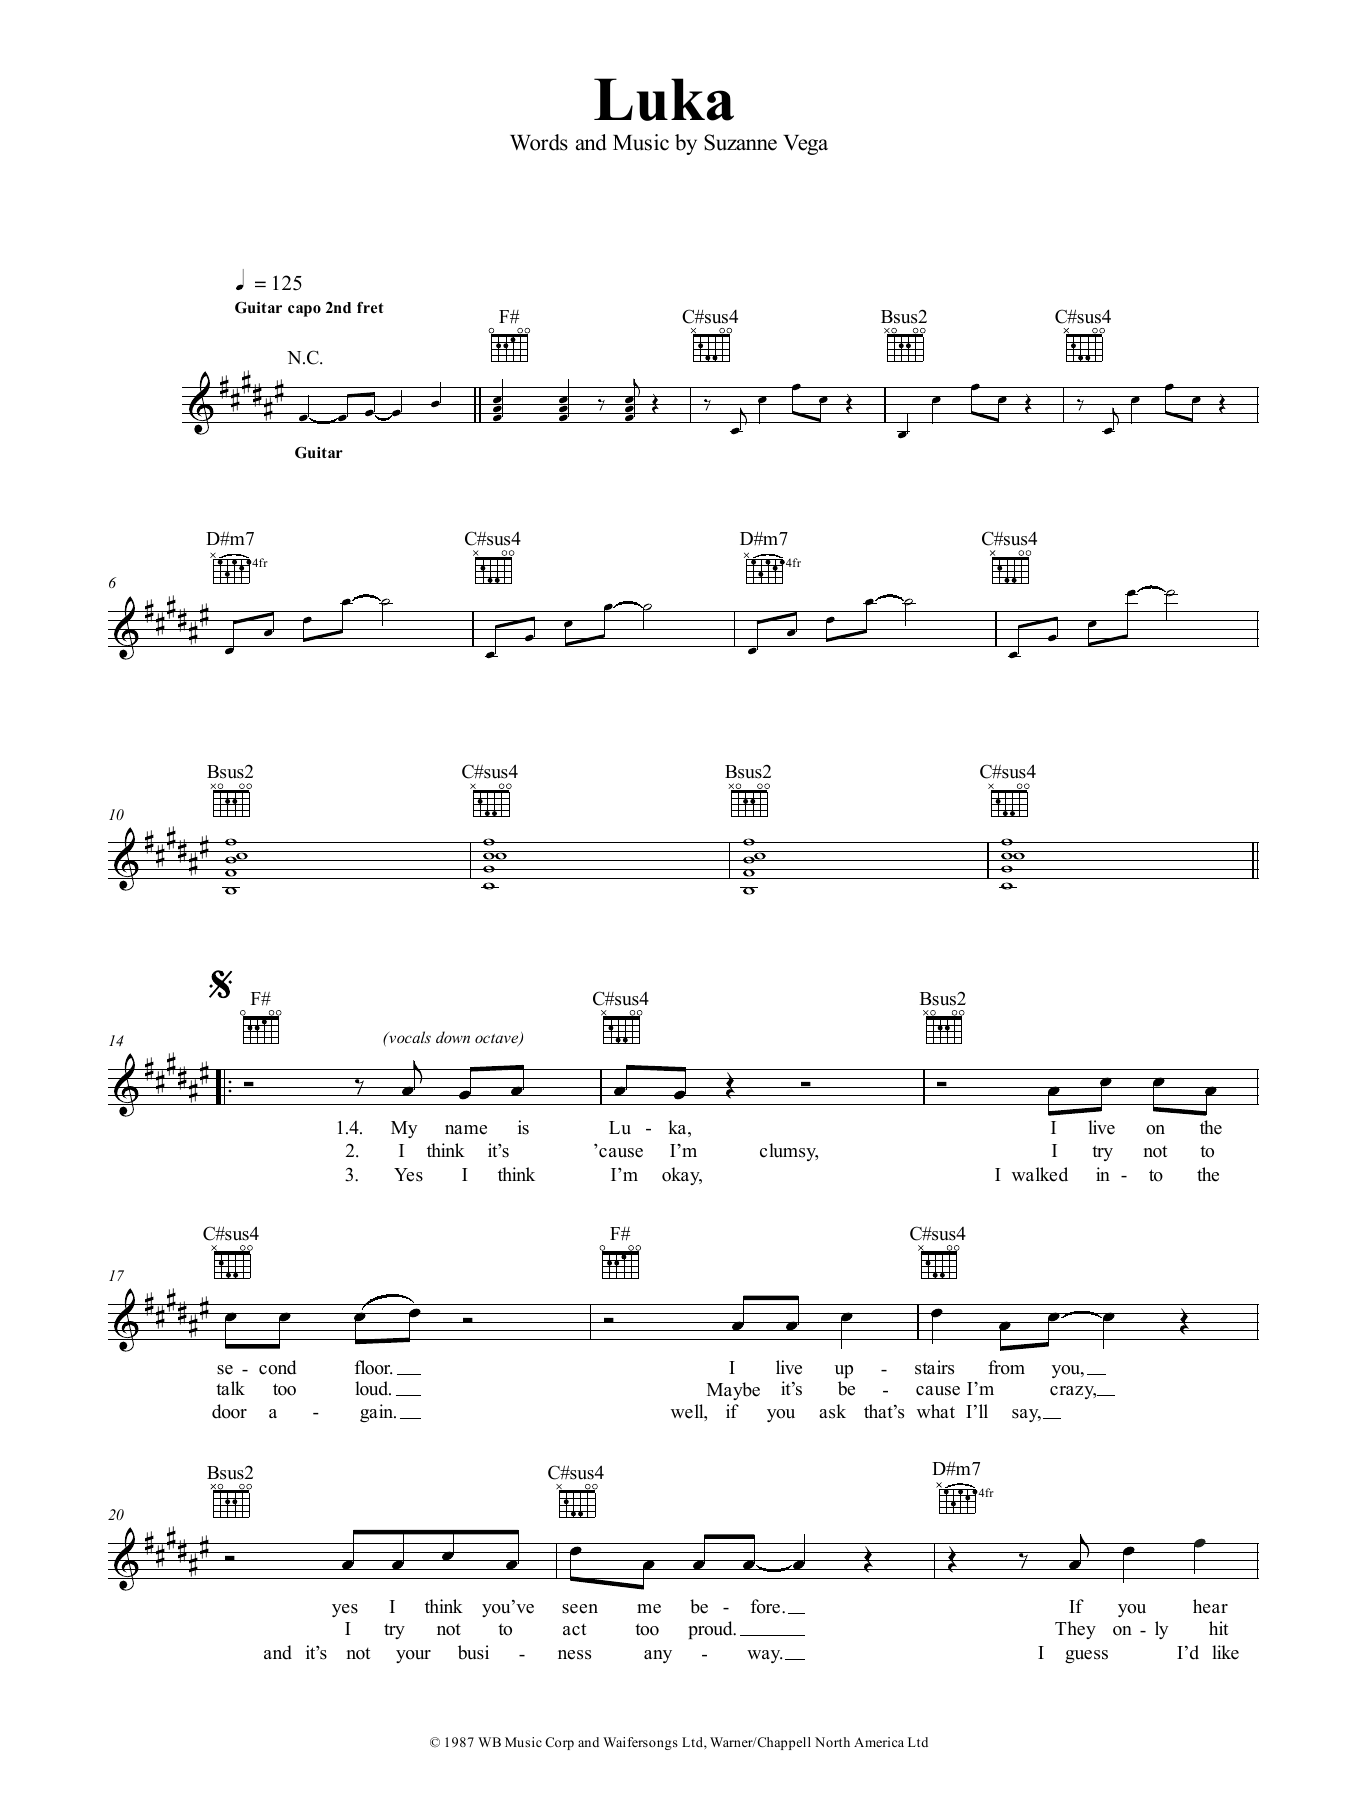 Suzanne Vega Luka Sheet Music Notes & Chords for Lyrics & Chords - Download or Print PDF